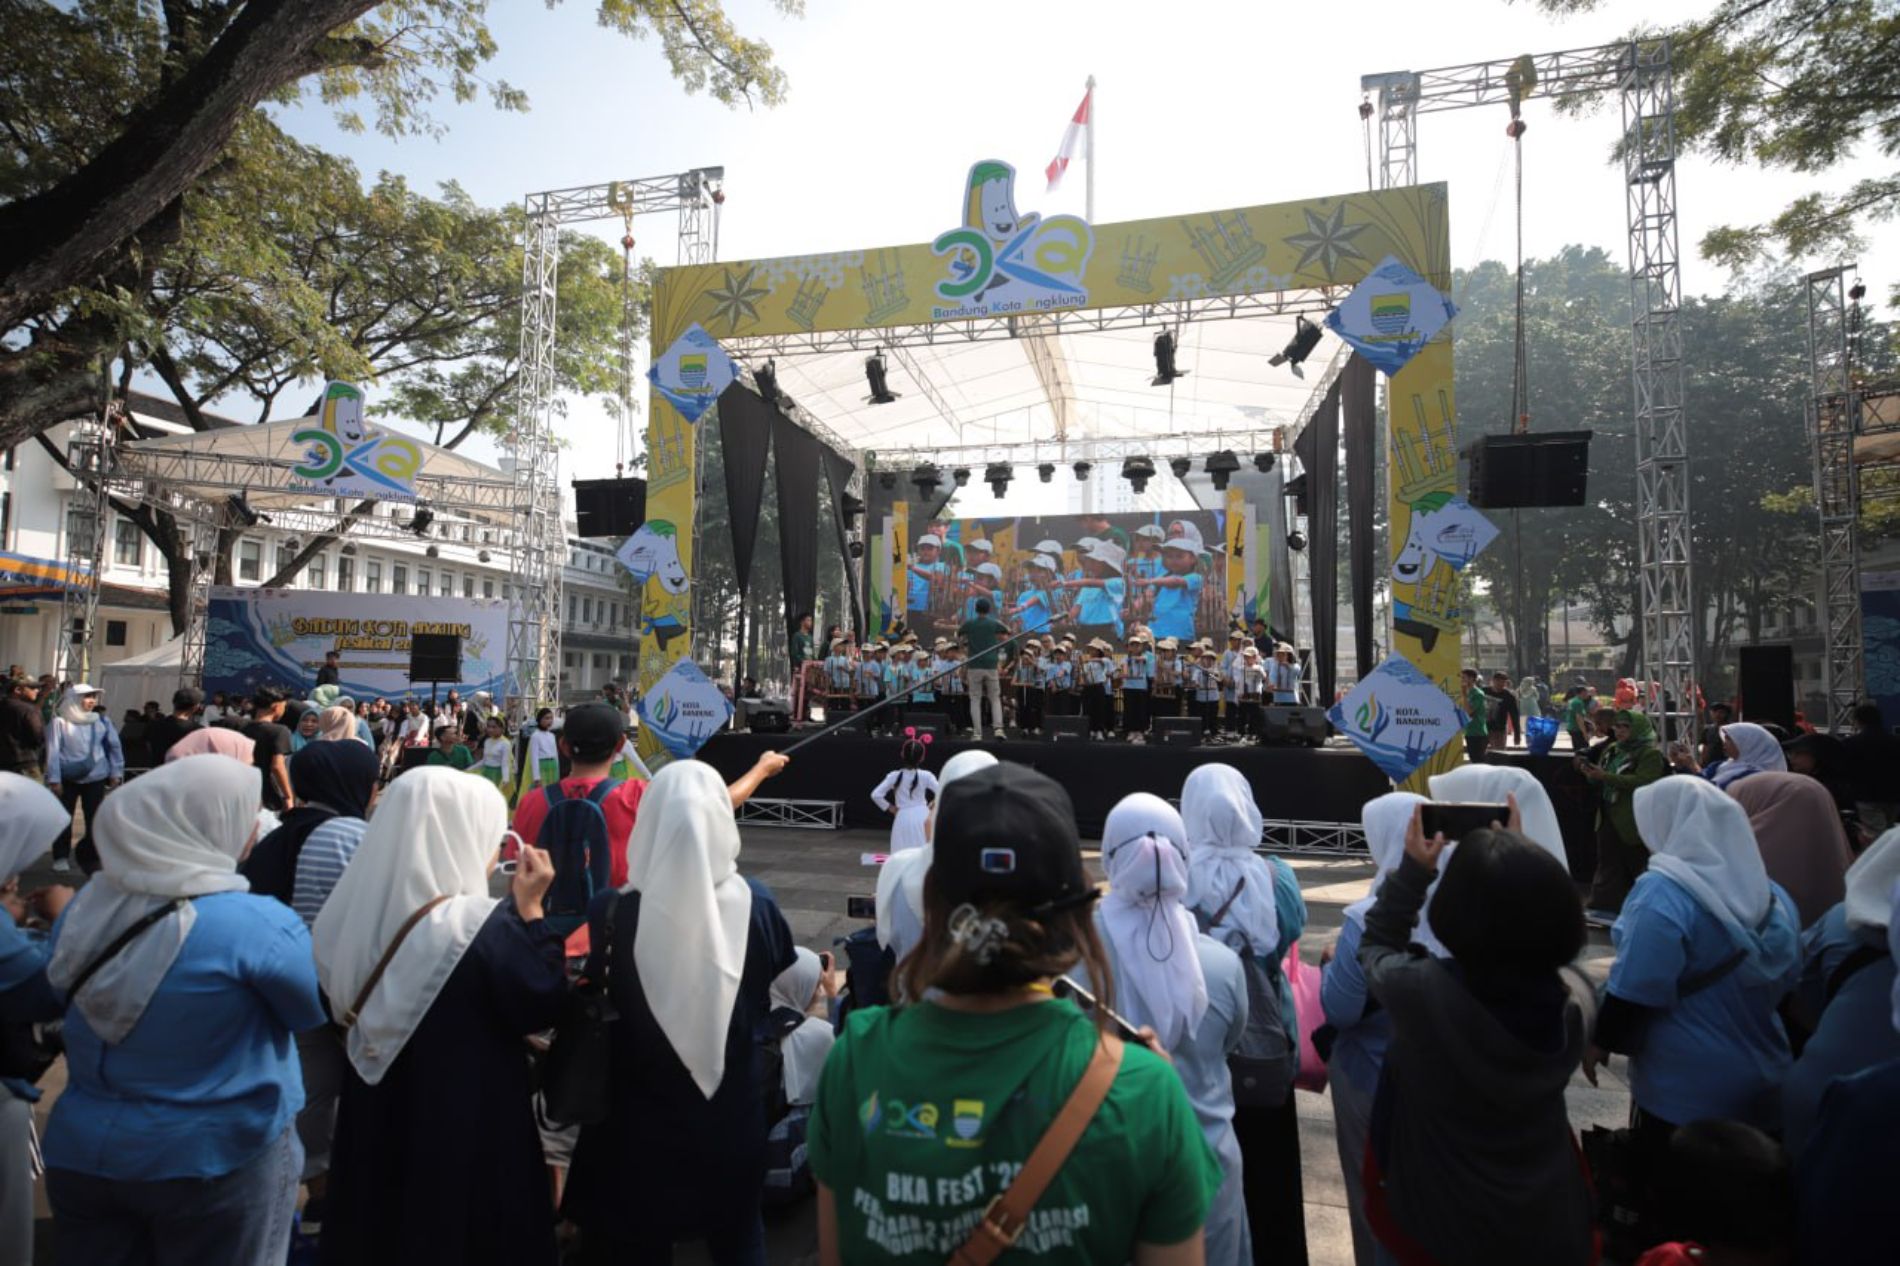 Antusias warga Bandung Raya sangat besar saat hadir di acara 12 Jam  Bandung Ngarulung Angklung